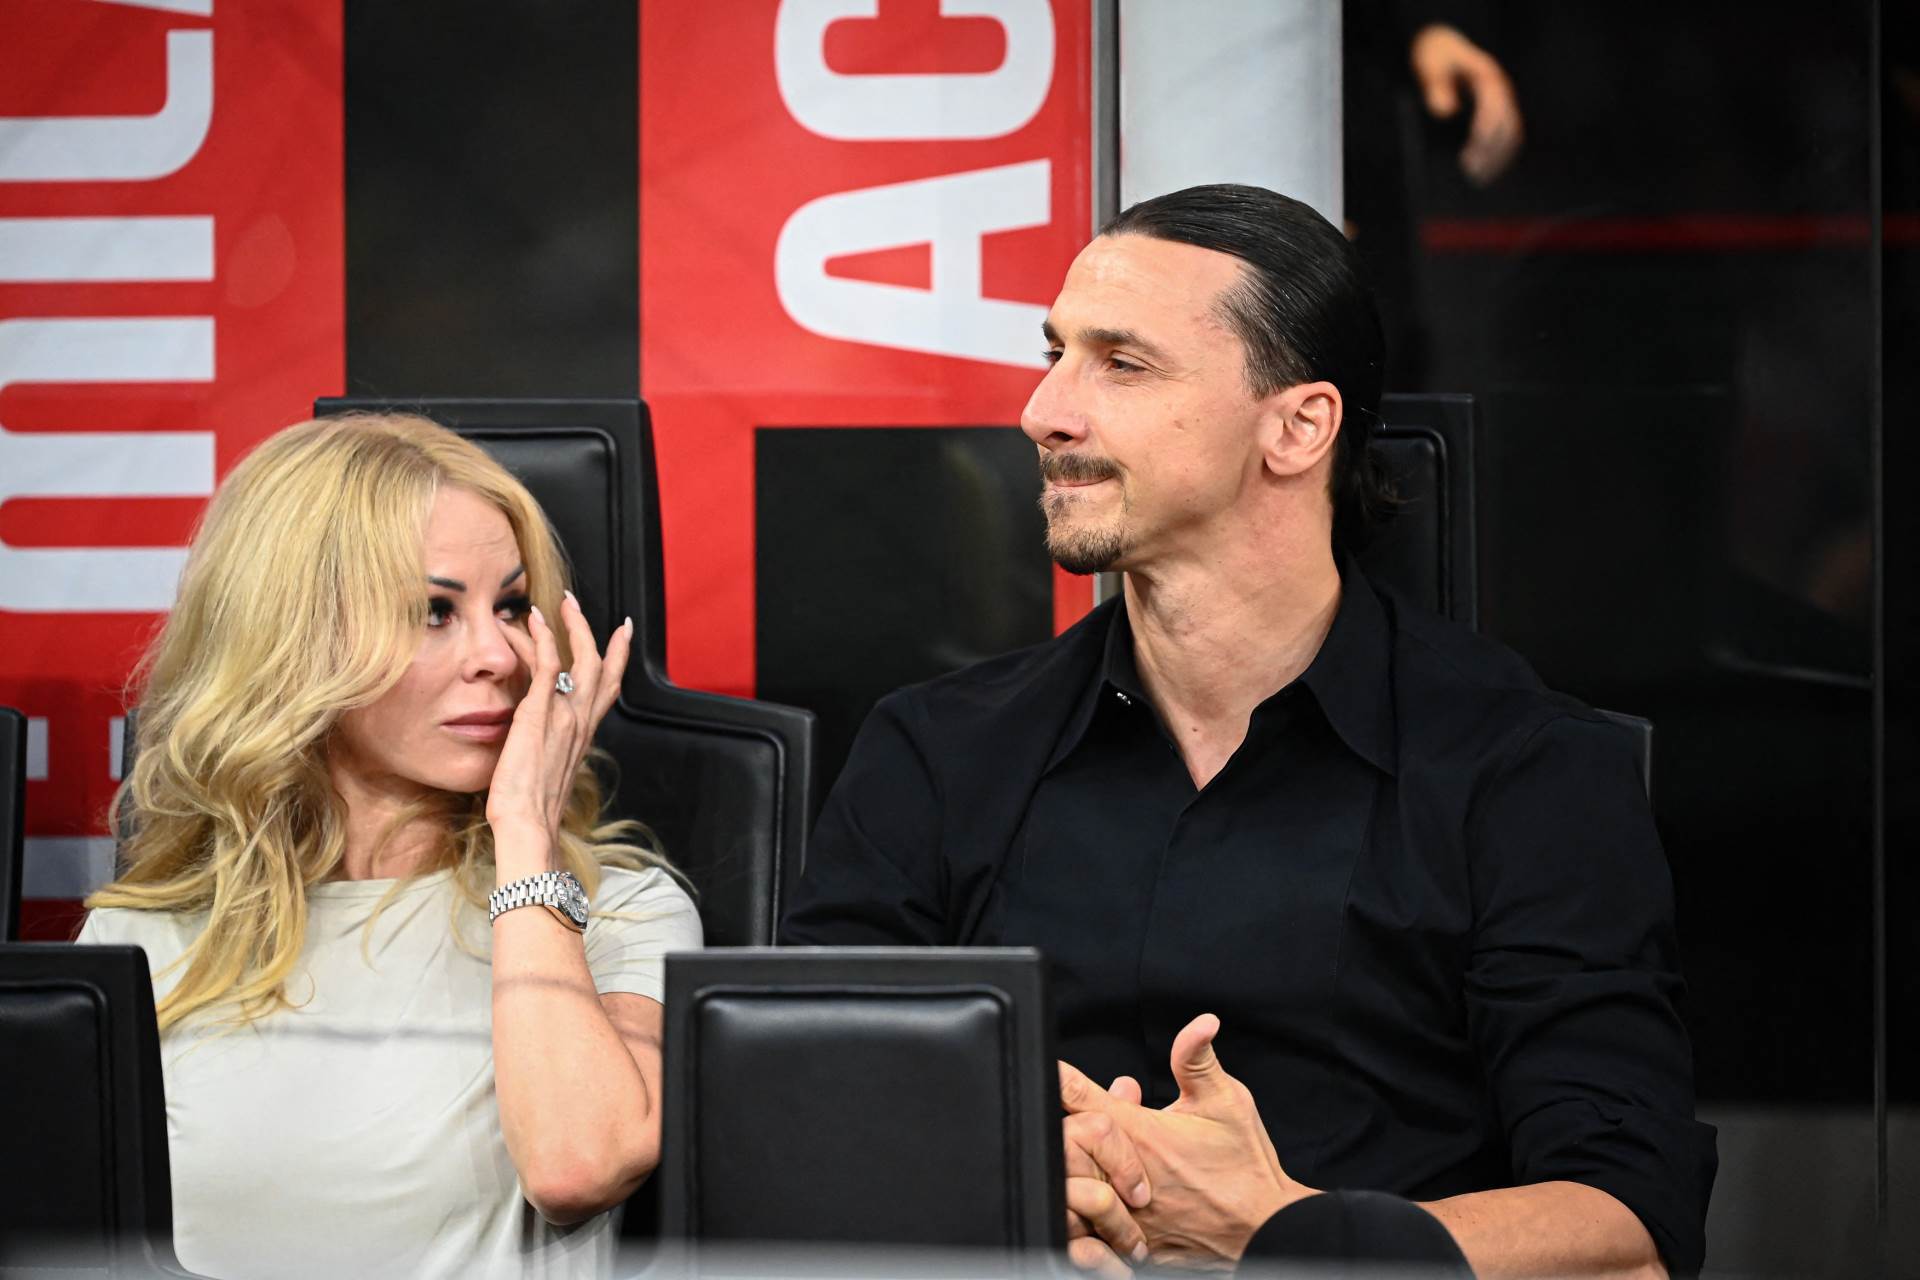  Ibrahimović završio karijeru i odlučio da se posveti porodici 